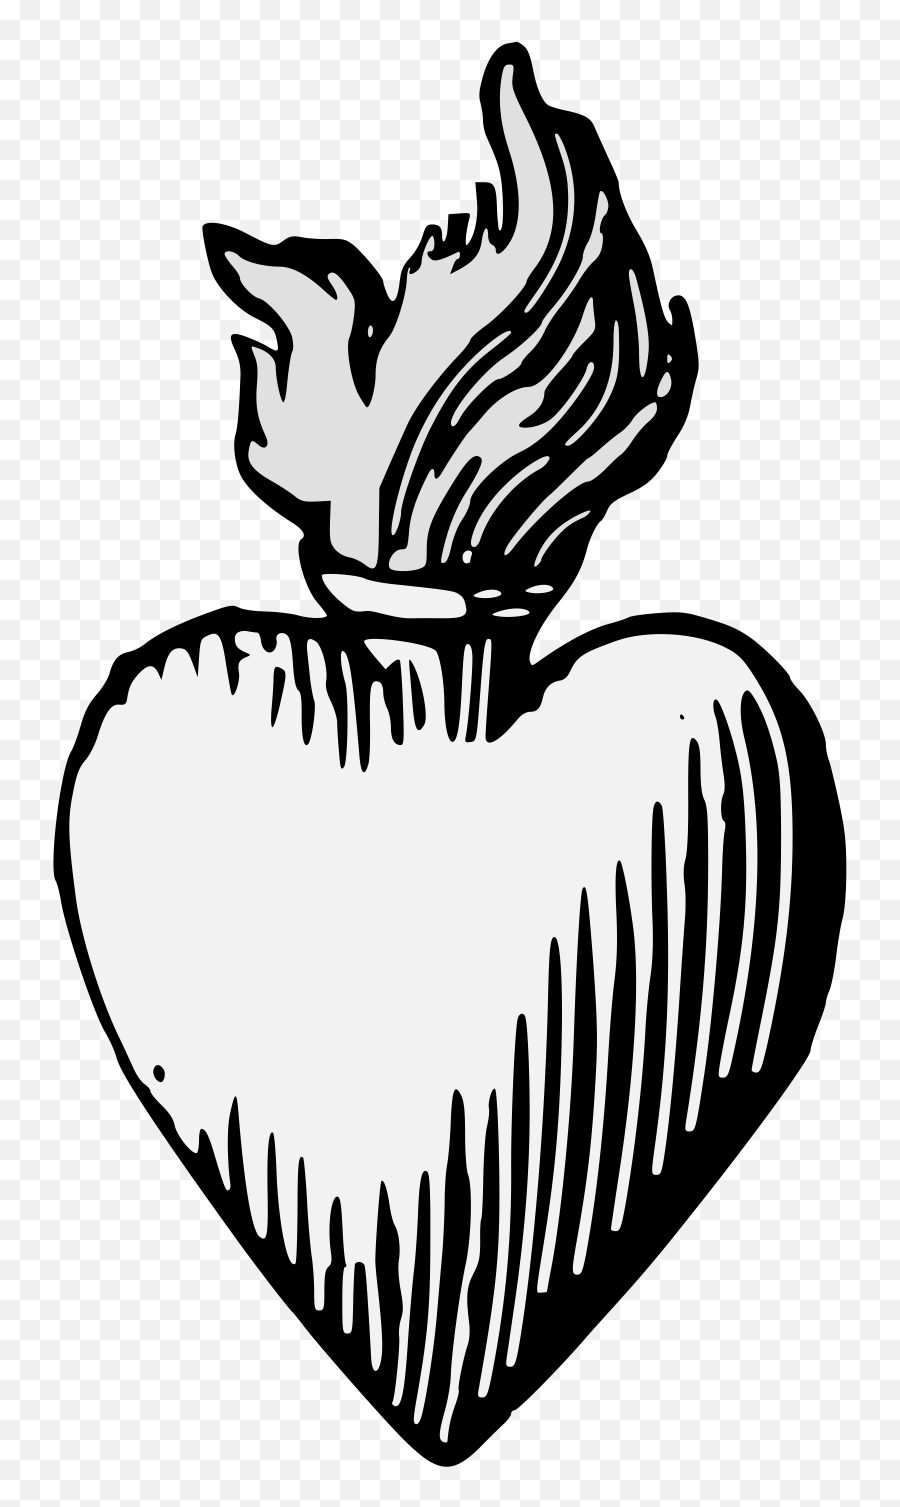 Heart - Traceable Heraldic Art Heart In Heraldic Symbols Emoji,Heart Outline Png